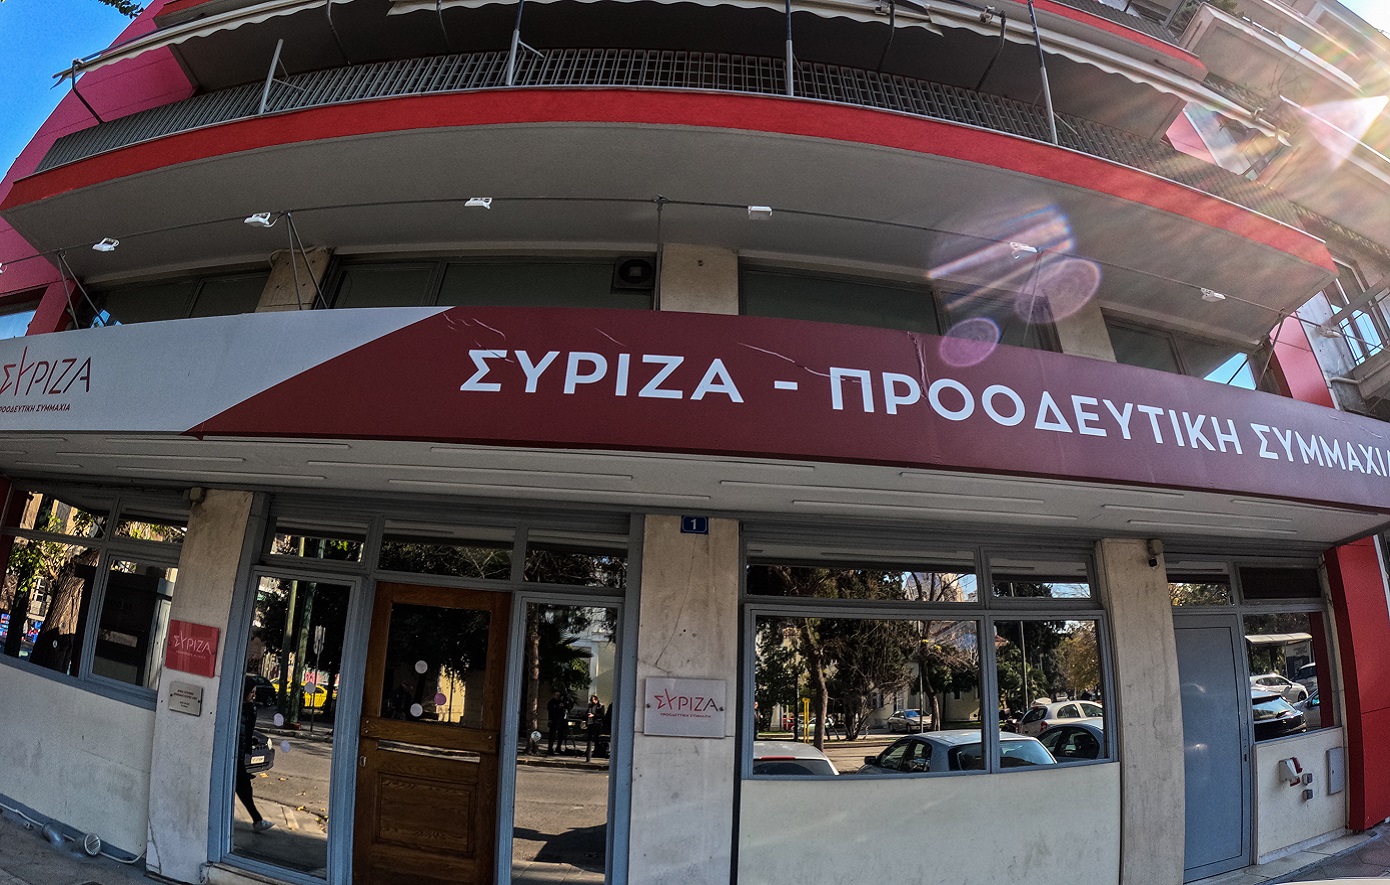 ΣΥΡΙΖΑ: Ο Άδωνις Γεωργιάδης τώρα και σε ρόλο φοροτεχνικού και εισαγγελέα